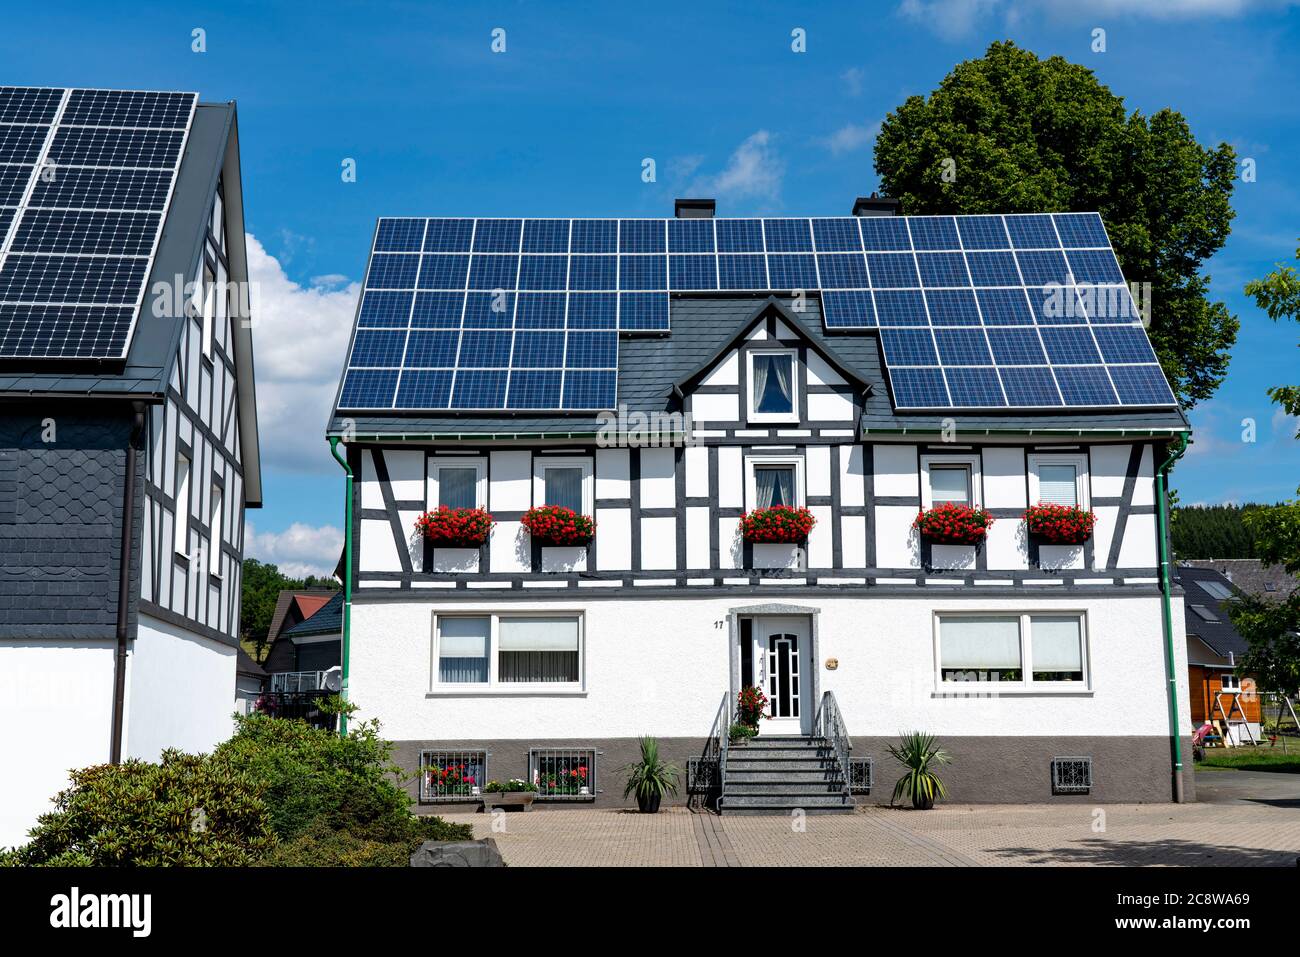 Fachwerkhaus mit Solardach, Solarmodule auf dem Schrägdach, bei Bad Berleburg, NRW, Deutschland, Stockfoto